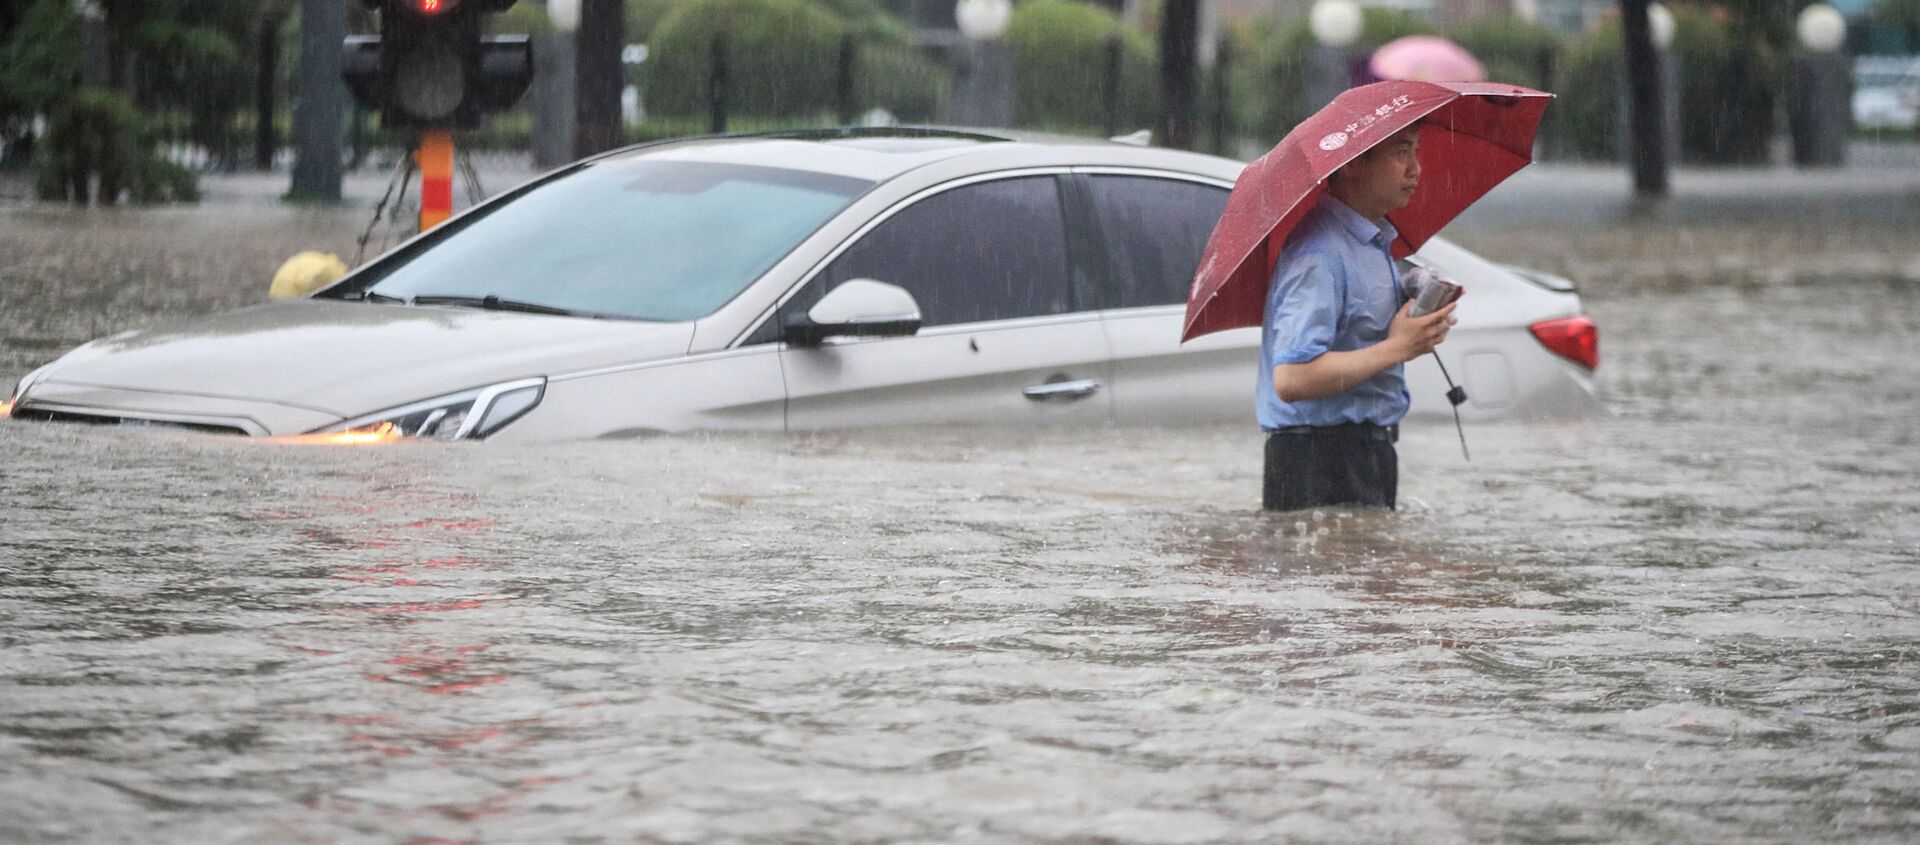 فيضانات هائلة تنجم عن أمطار غزيرة في تشنغتشو، وسط محافظة هينان، الصين 20 يوليو 2021 - سبوتنيك عربي, 1920, 23.07.2021